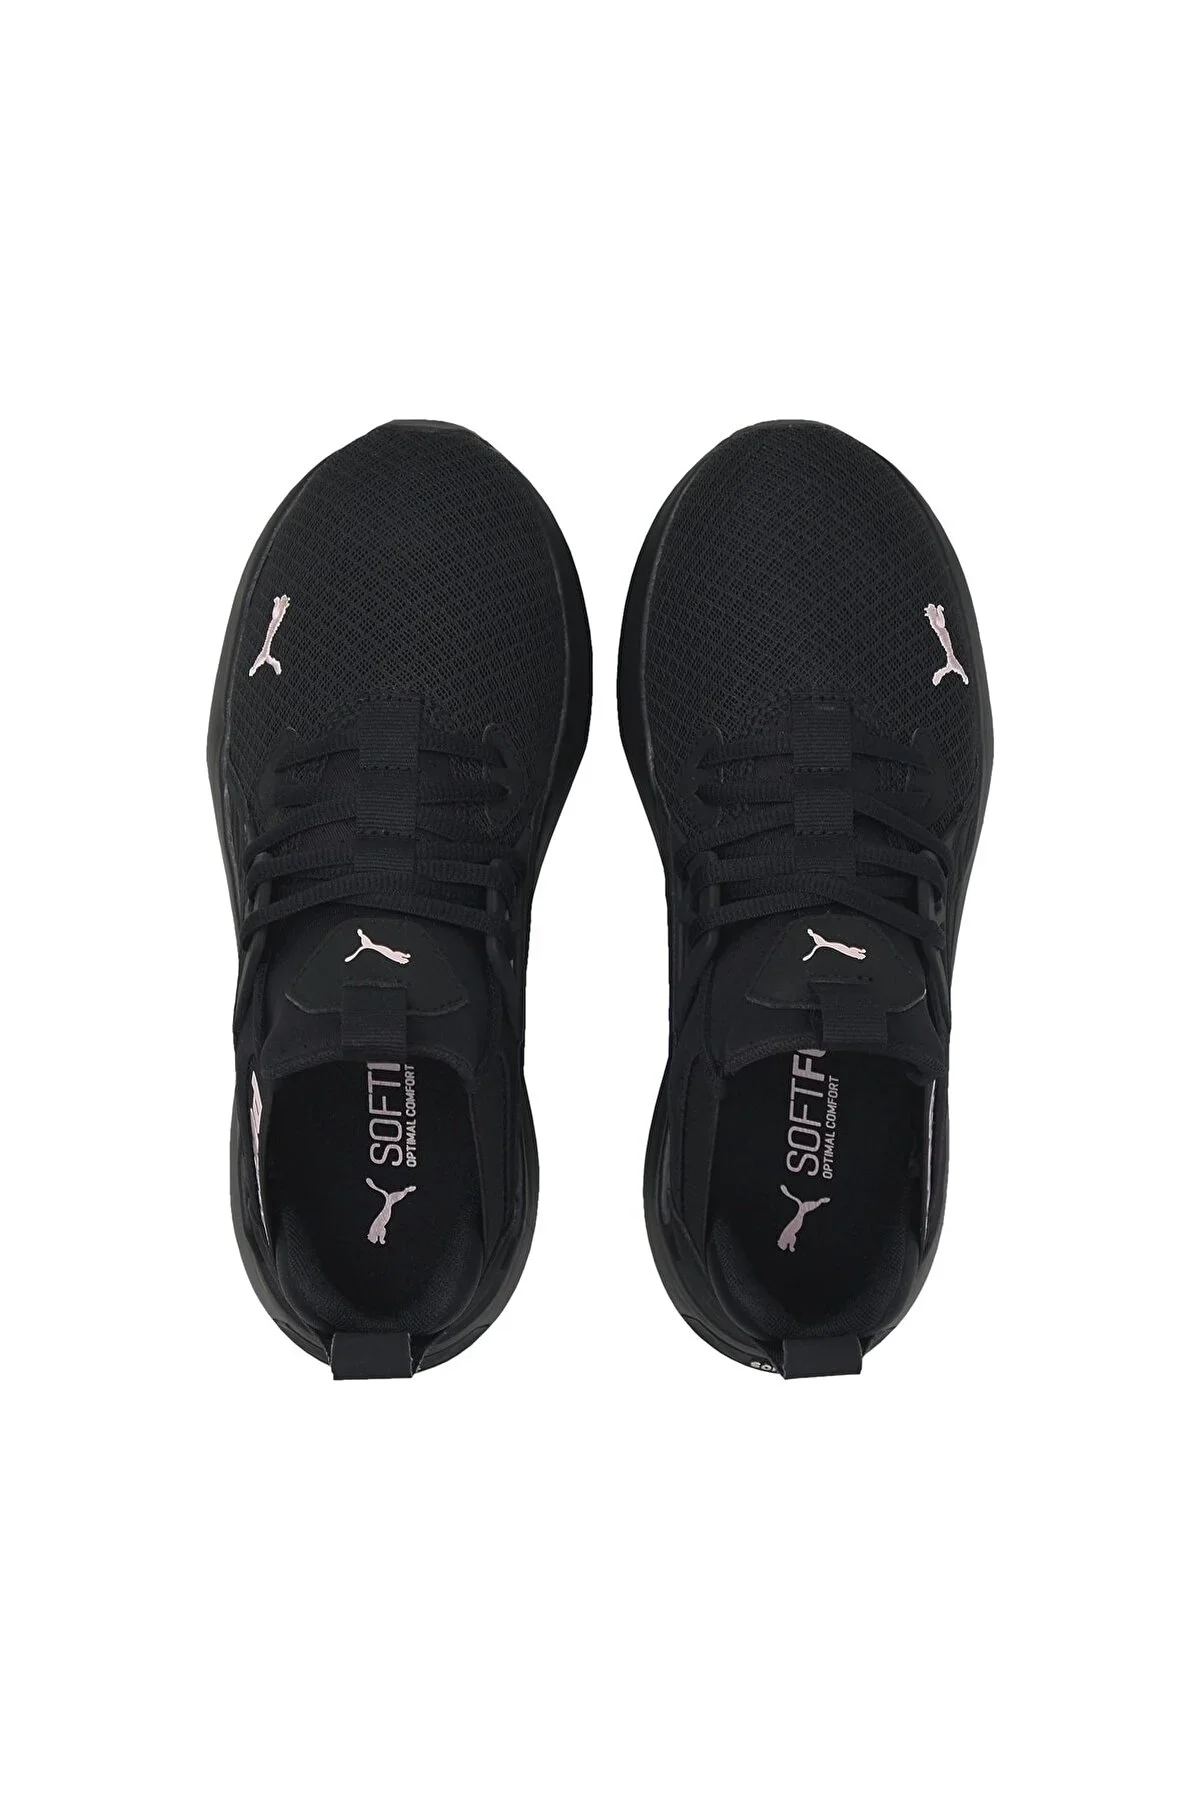 Softride Enzo Nxt Wn S Kadın Spor Ayakkabısı-Siyah - 4